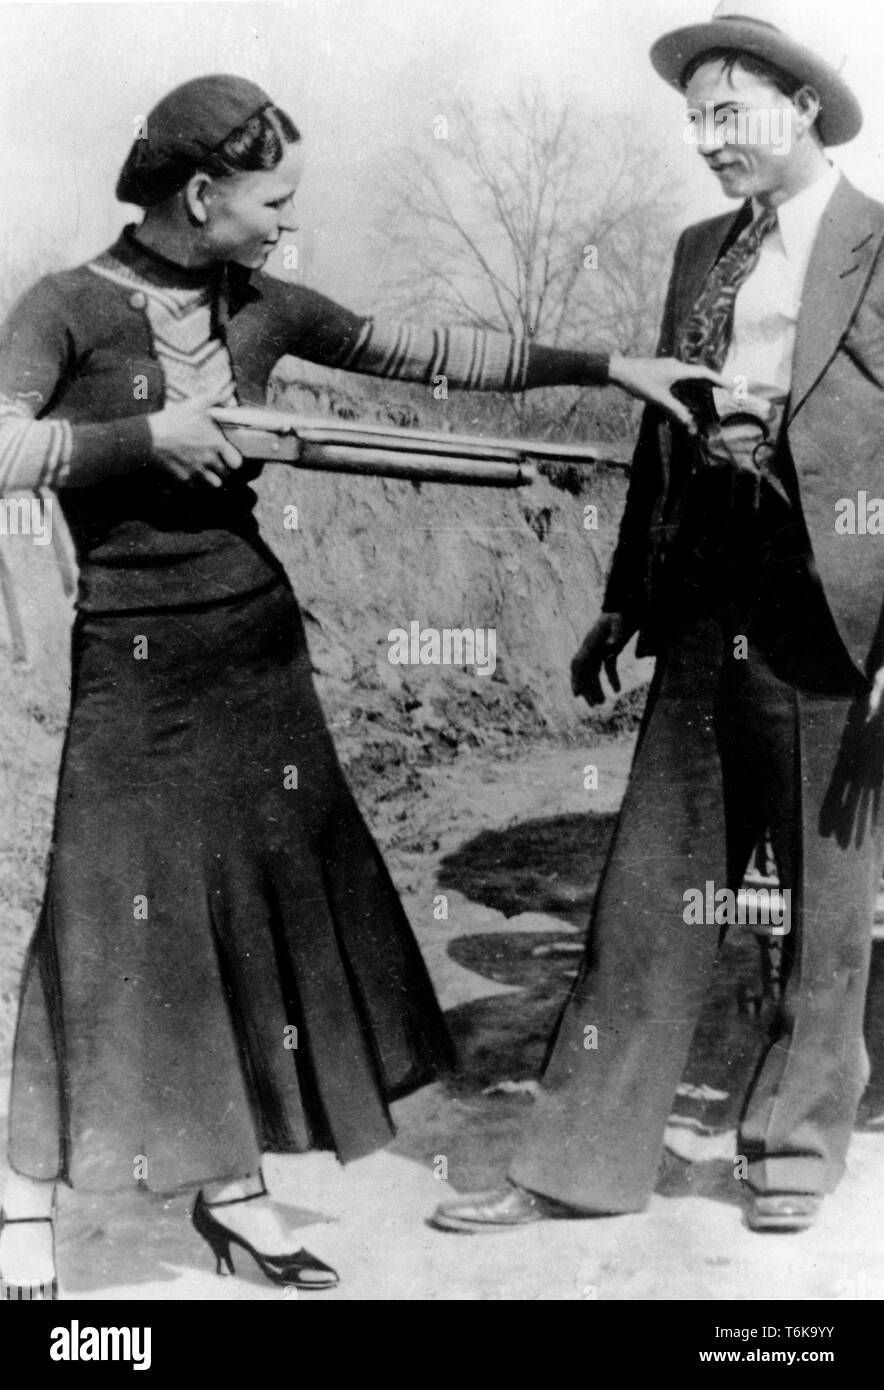 Bonnie and Clyde, Bonnie Parker vise de façon ludique un fusil au Clyde Barrow. Bonnie Elizabeth Parker (1910 - 1934) et Clyde Chestnut Barrow (1909 - 1934) qui se sont rendus criminels américains le centre des États-Unis avec leur piste au cours de la grande dépression, de voler des banques et des magasins, et tuant plusieurs personnes Banque D'Images